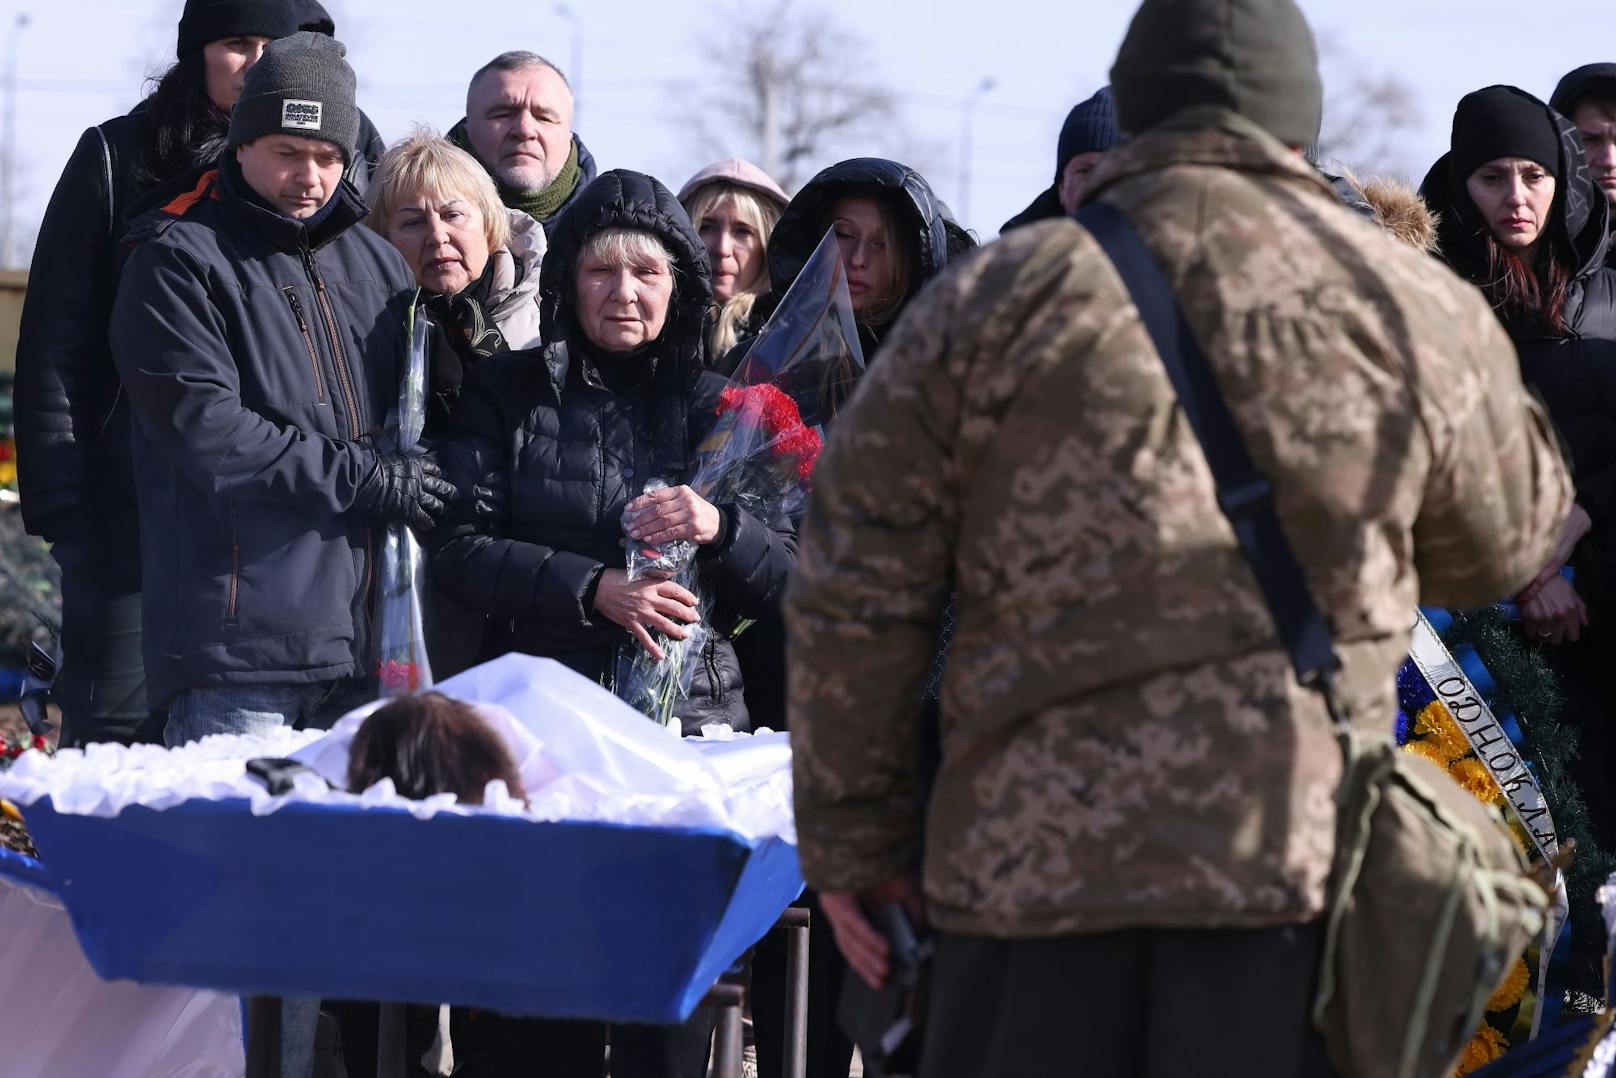 "31.000 ukrainische Militärs sind in diesem Krieg gestorben. Nicht 300.000, auch nicht 150.000, wie Putin lügt..."